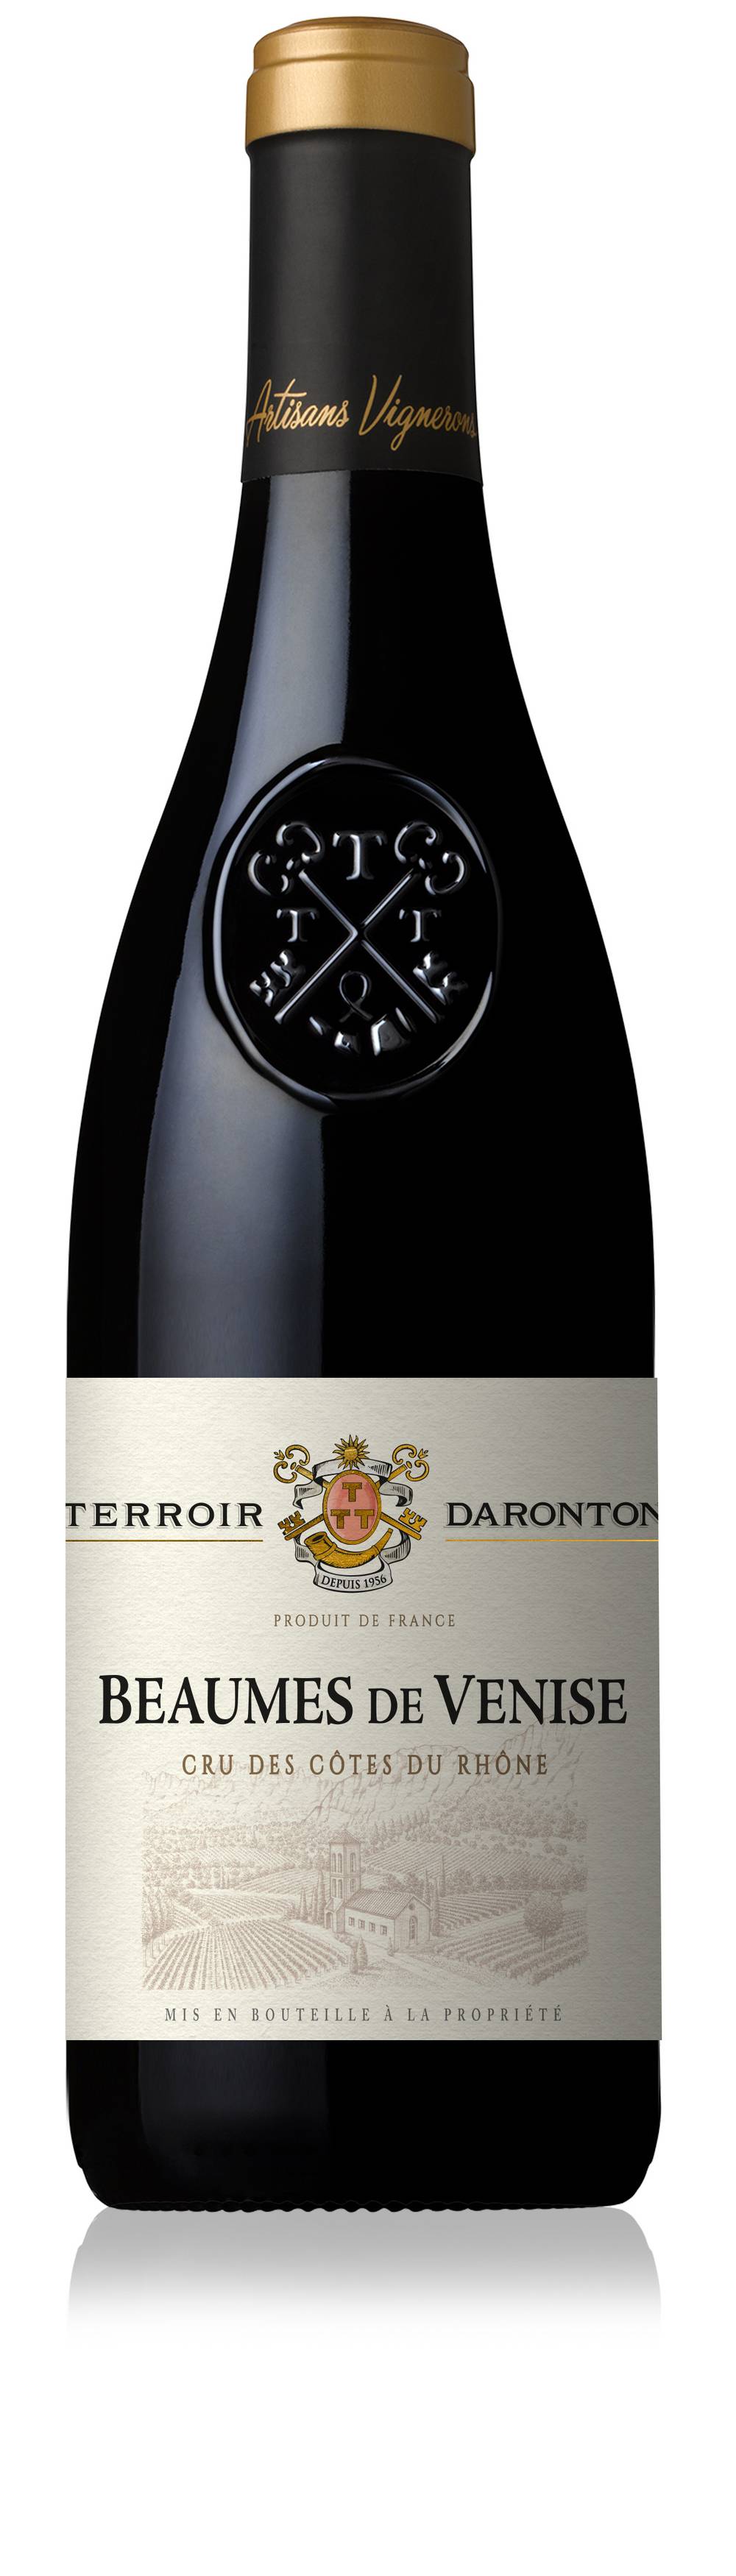 Terroir Daronton - Vin rouge beaumes-de-venise  (750 ml)